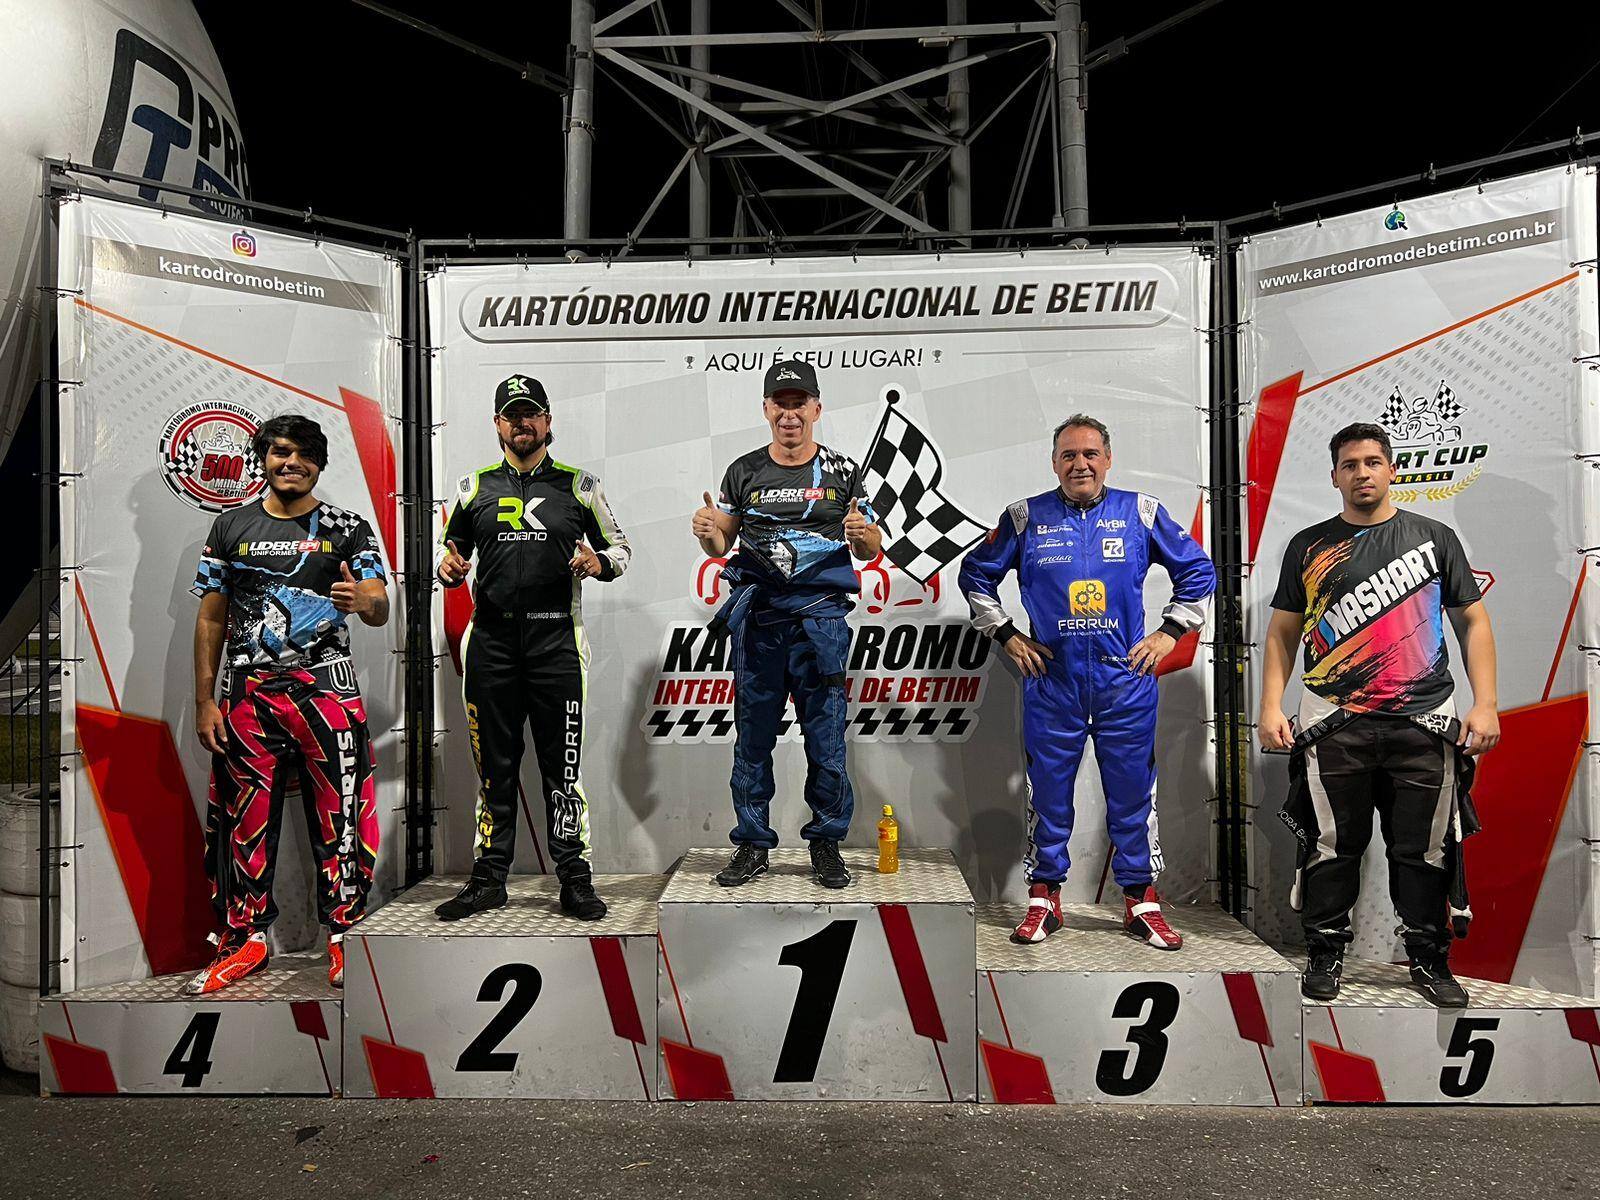 Rodrigo Rotheia (centro) subiu no pódio na categoria Super Kart, seguido de Rodrigo Dourado e Rogério Ferrum, segundo e terceiro colocados